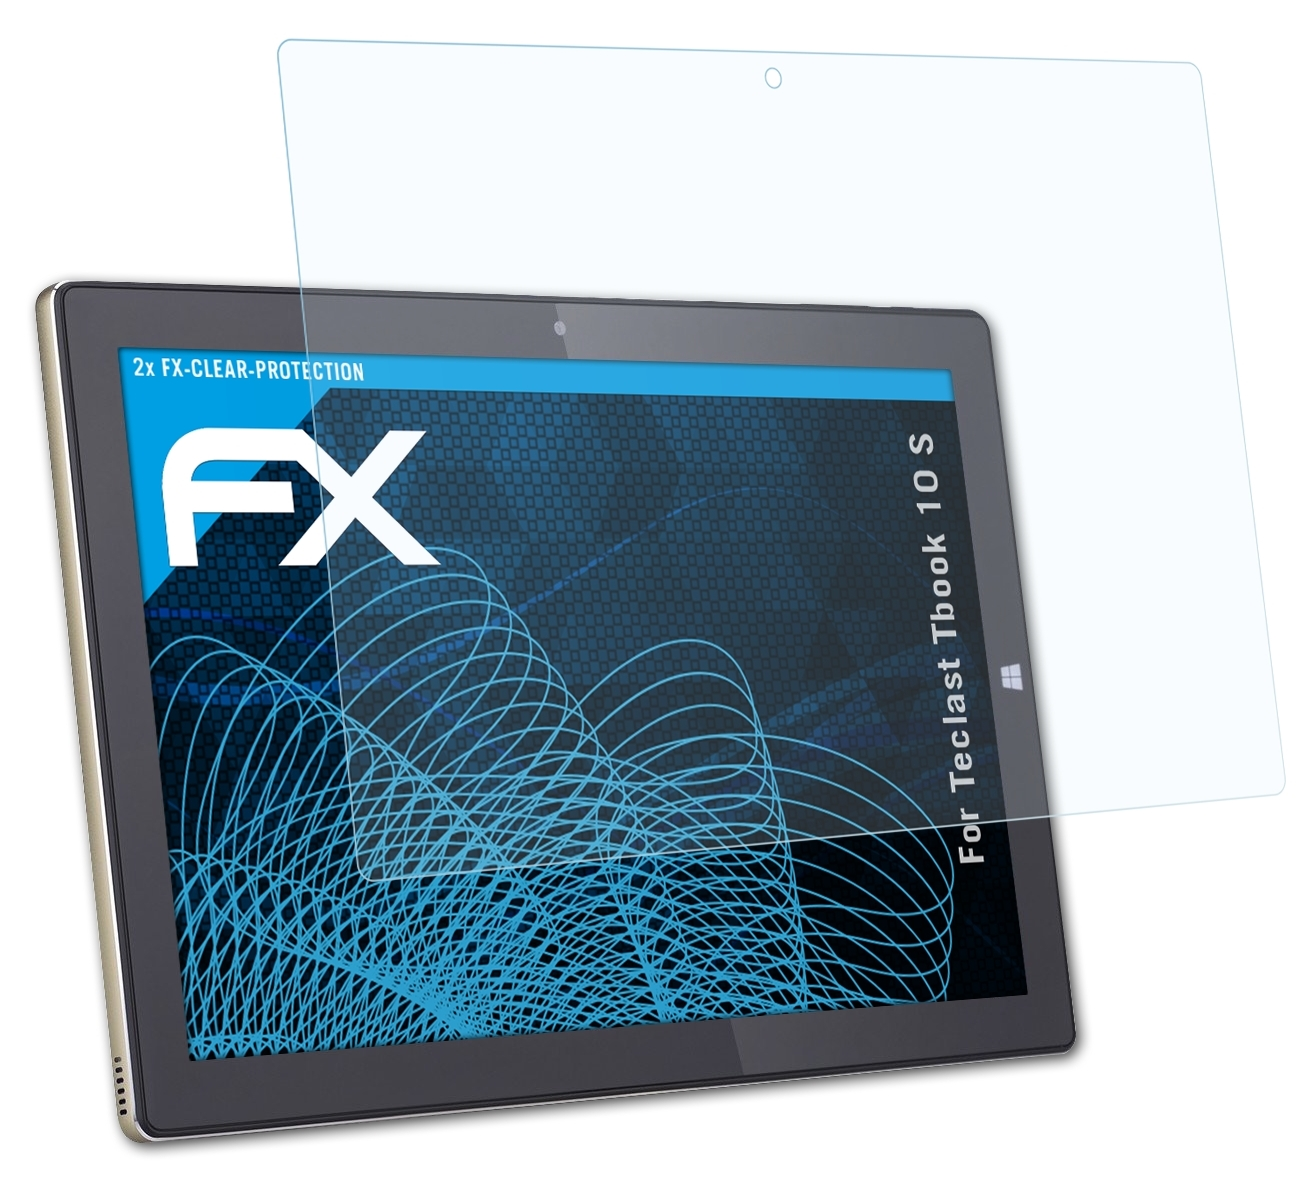 ATFOLIX 2x FX-Clear Tbook 10 Teclast Displayschutz(für S)